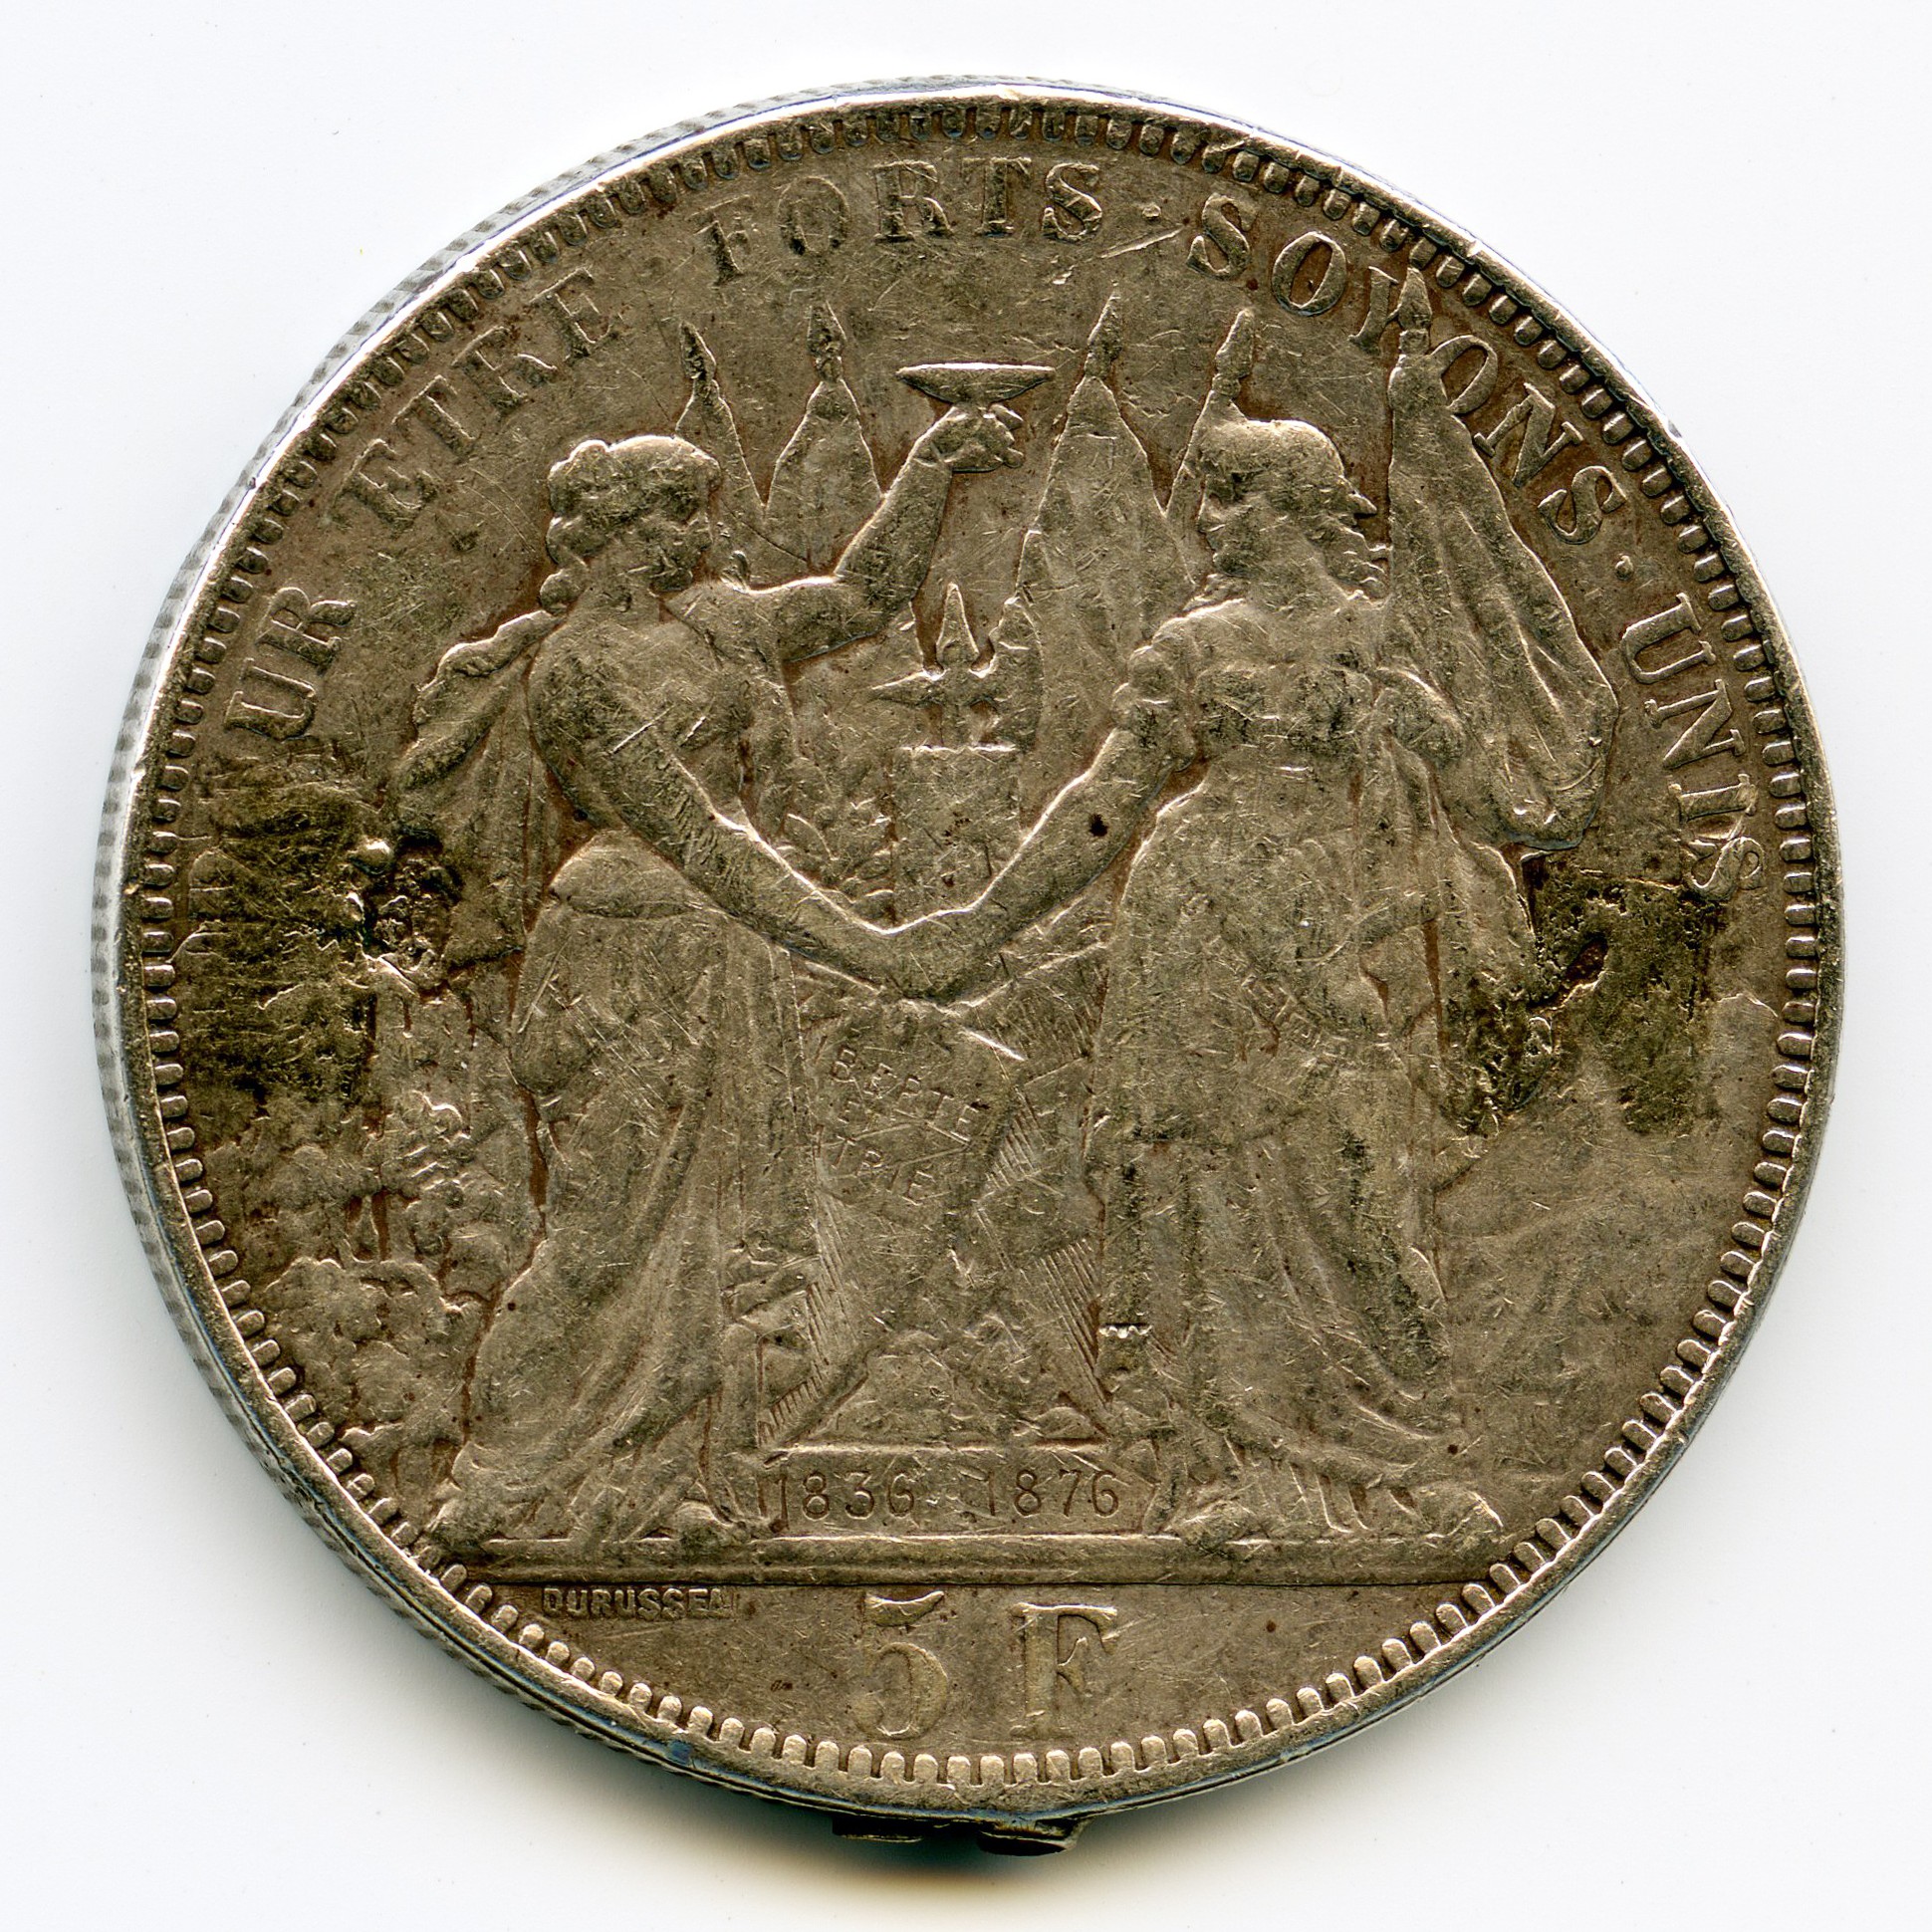 Suisse - 5 Francs - 1876 revers